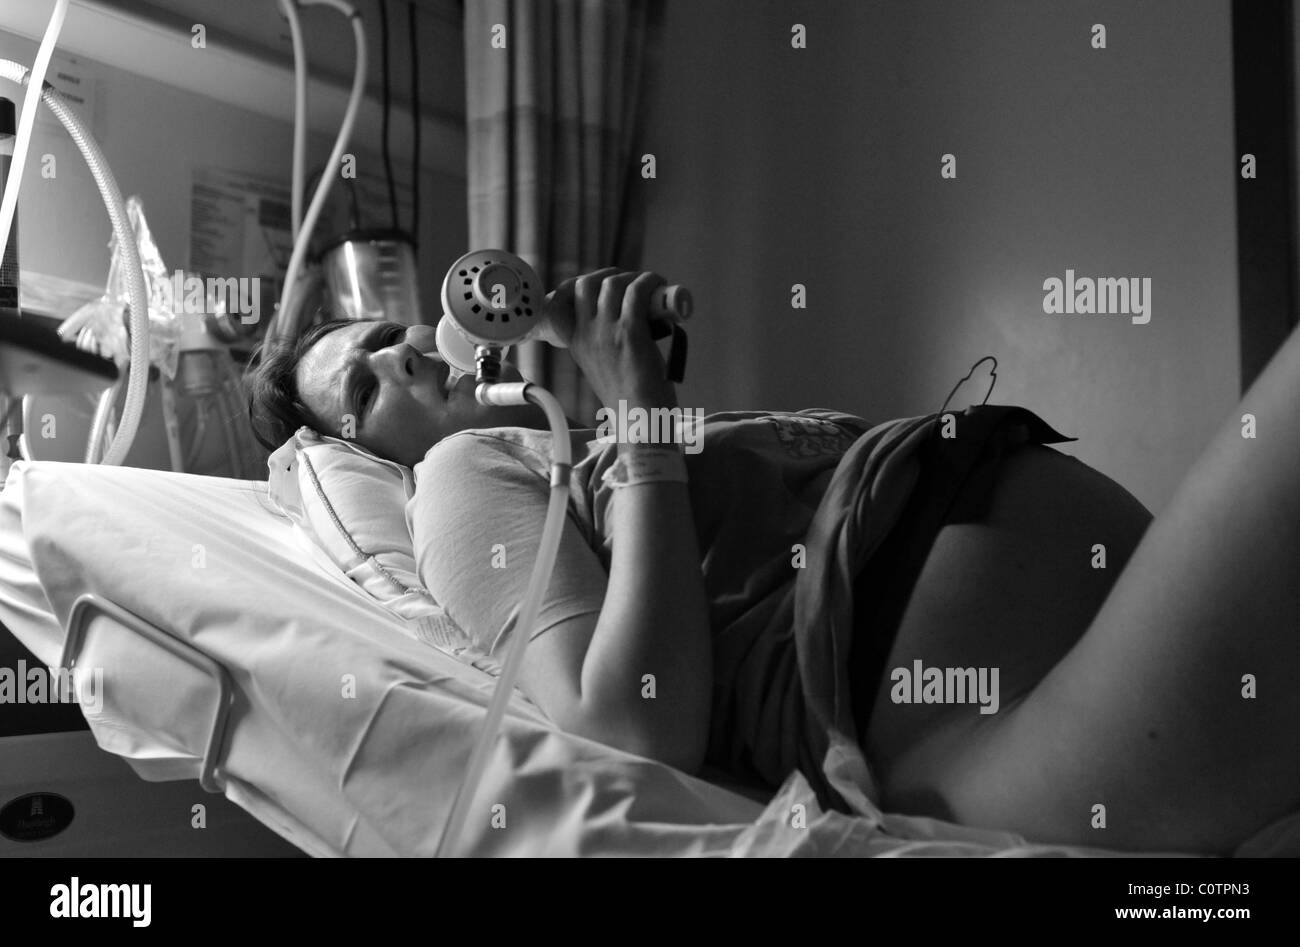 Schwangere Frau vor Schmerzen während der Entbindung unter Gas-Luft-Gemisch  zur Schmerzlinderung Stockfotografie - Alamy